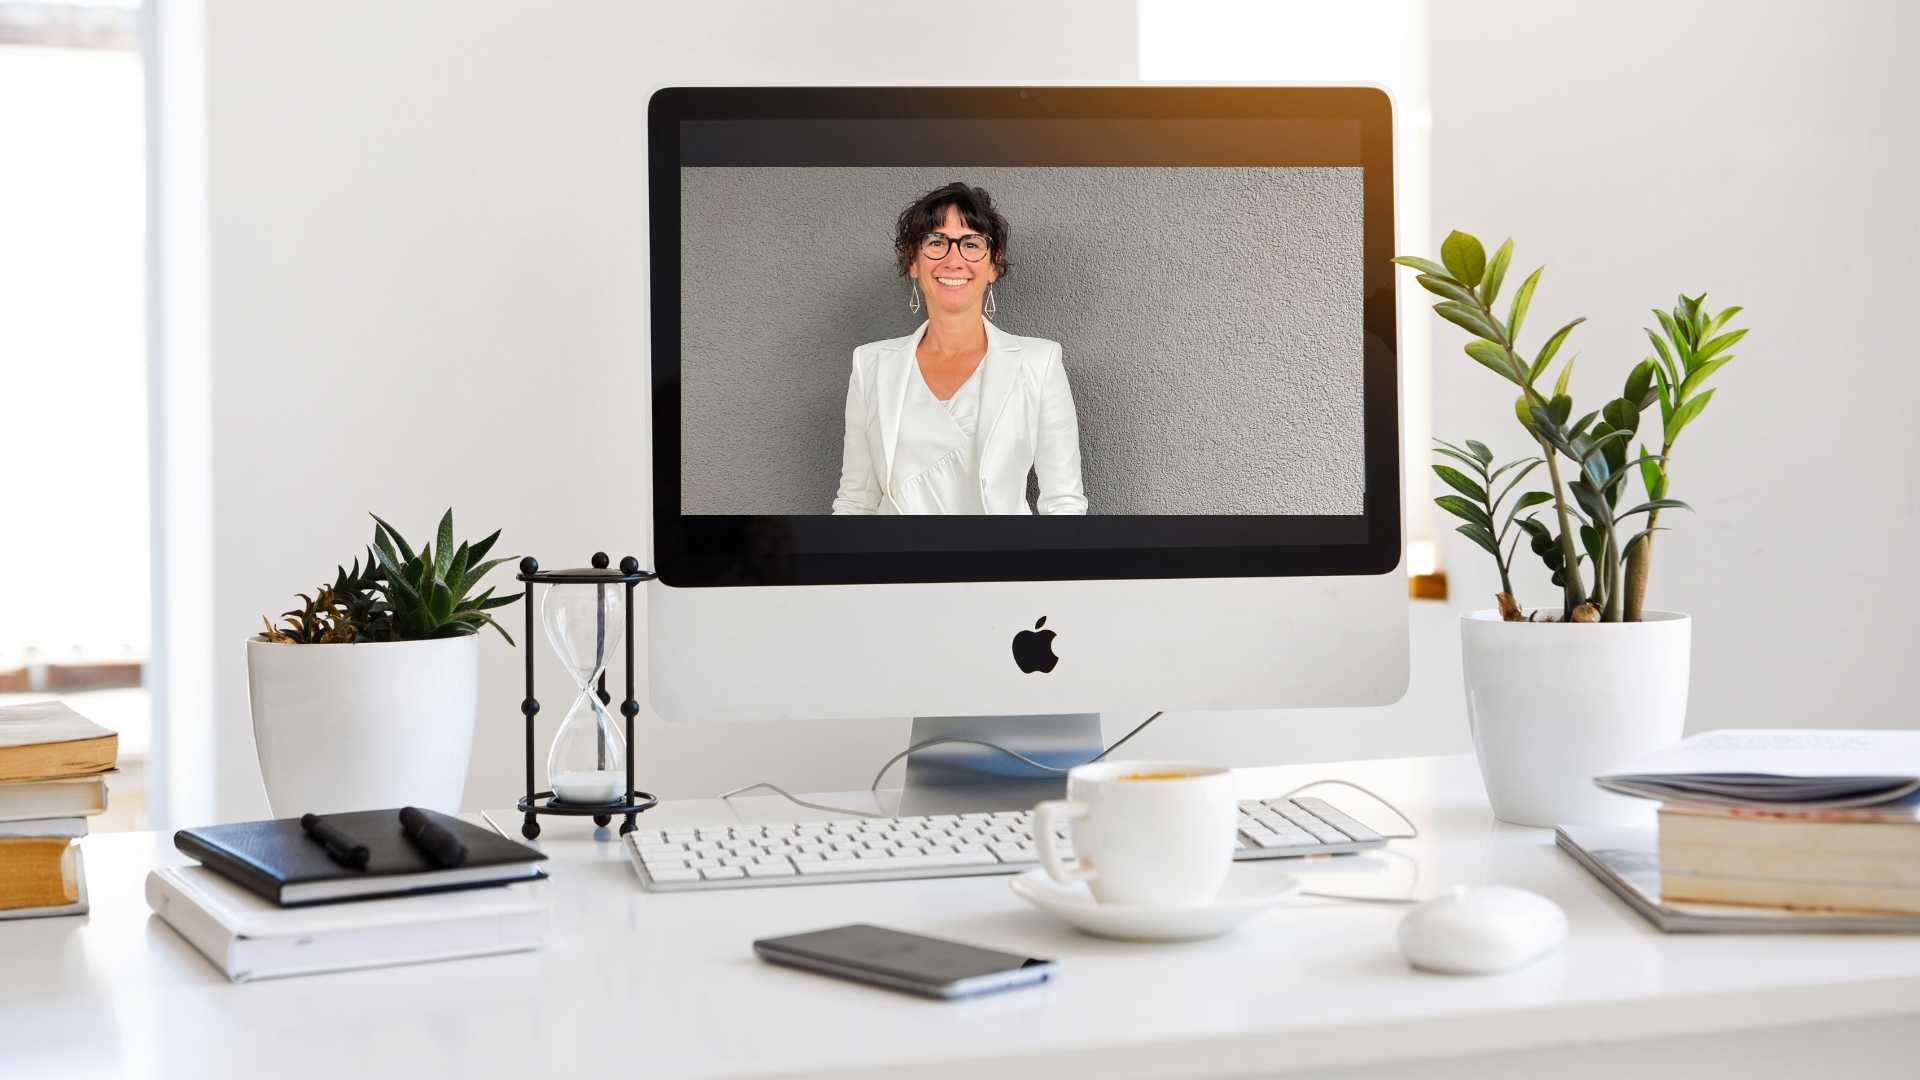 Als Business Coach für Frauen bietet Claudia Potschigmann auch online Kurse an, wie man hier auf einem iMac mit Claudia am Bildschirm sehen kann.